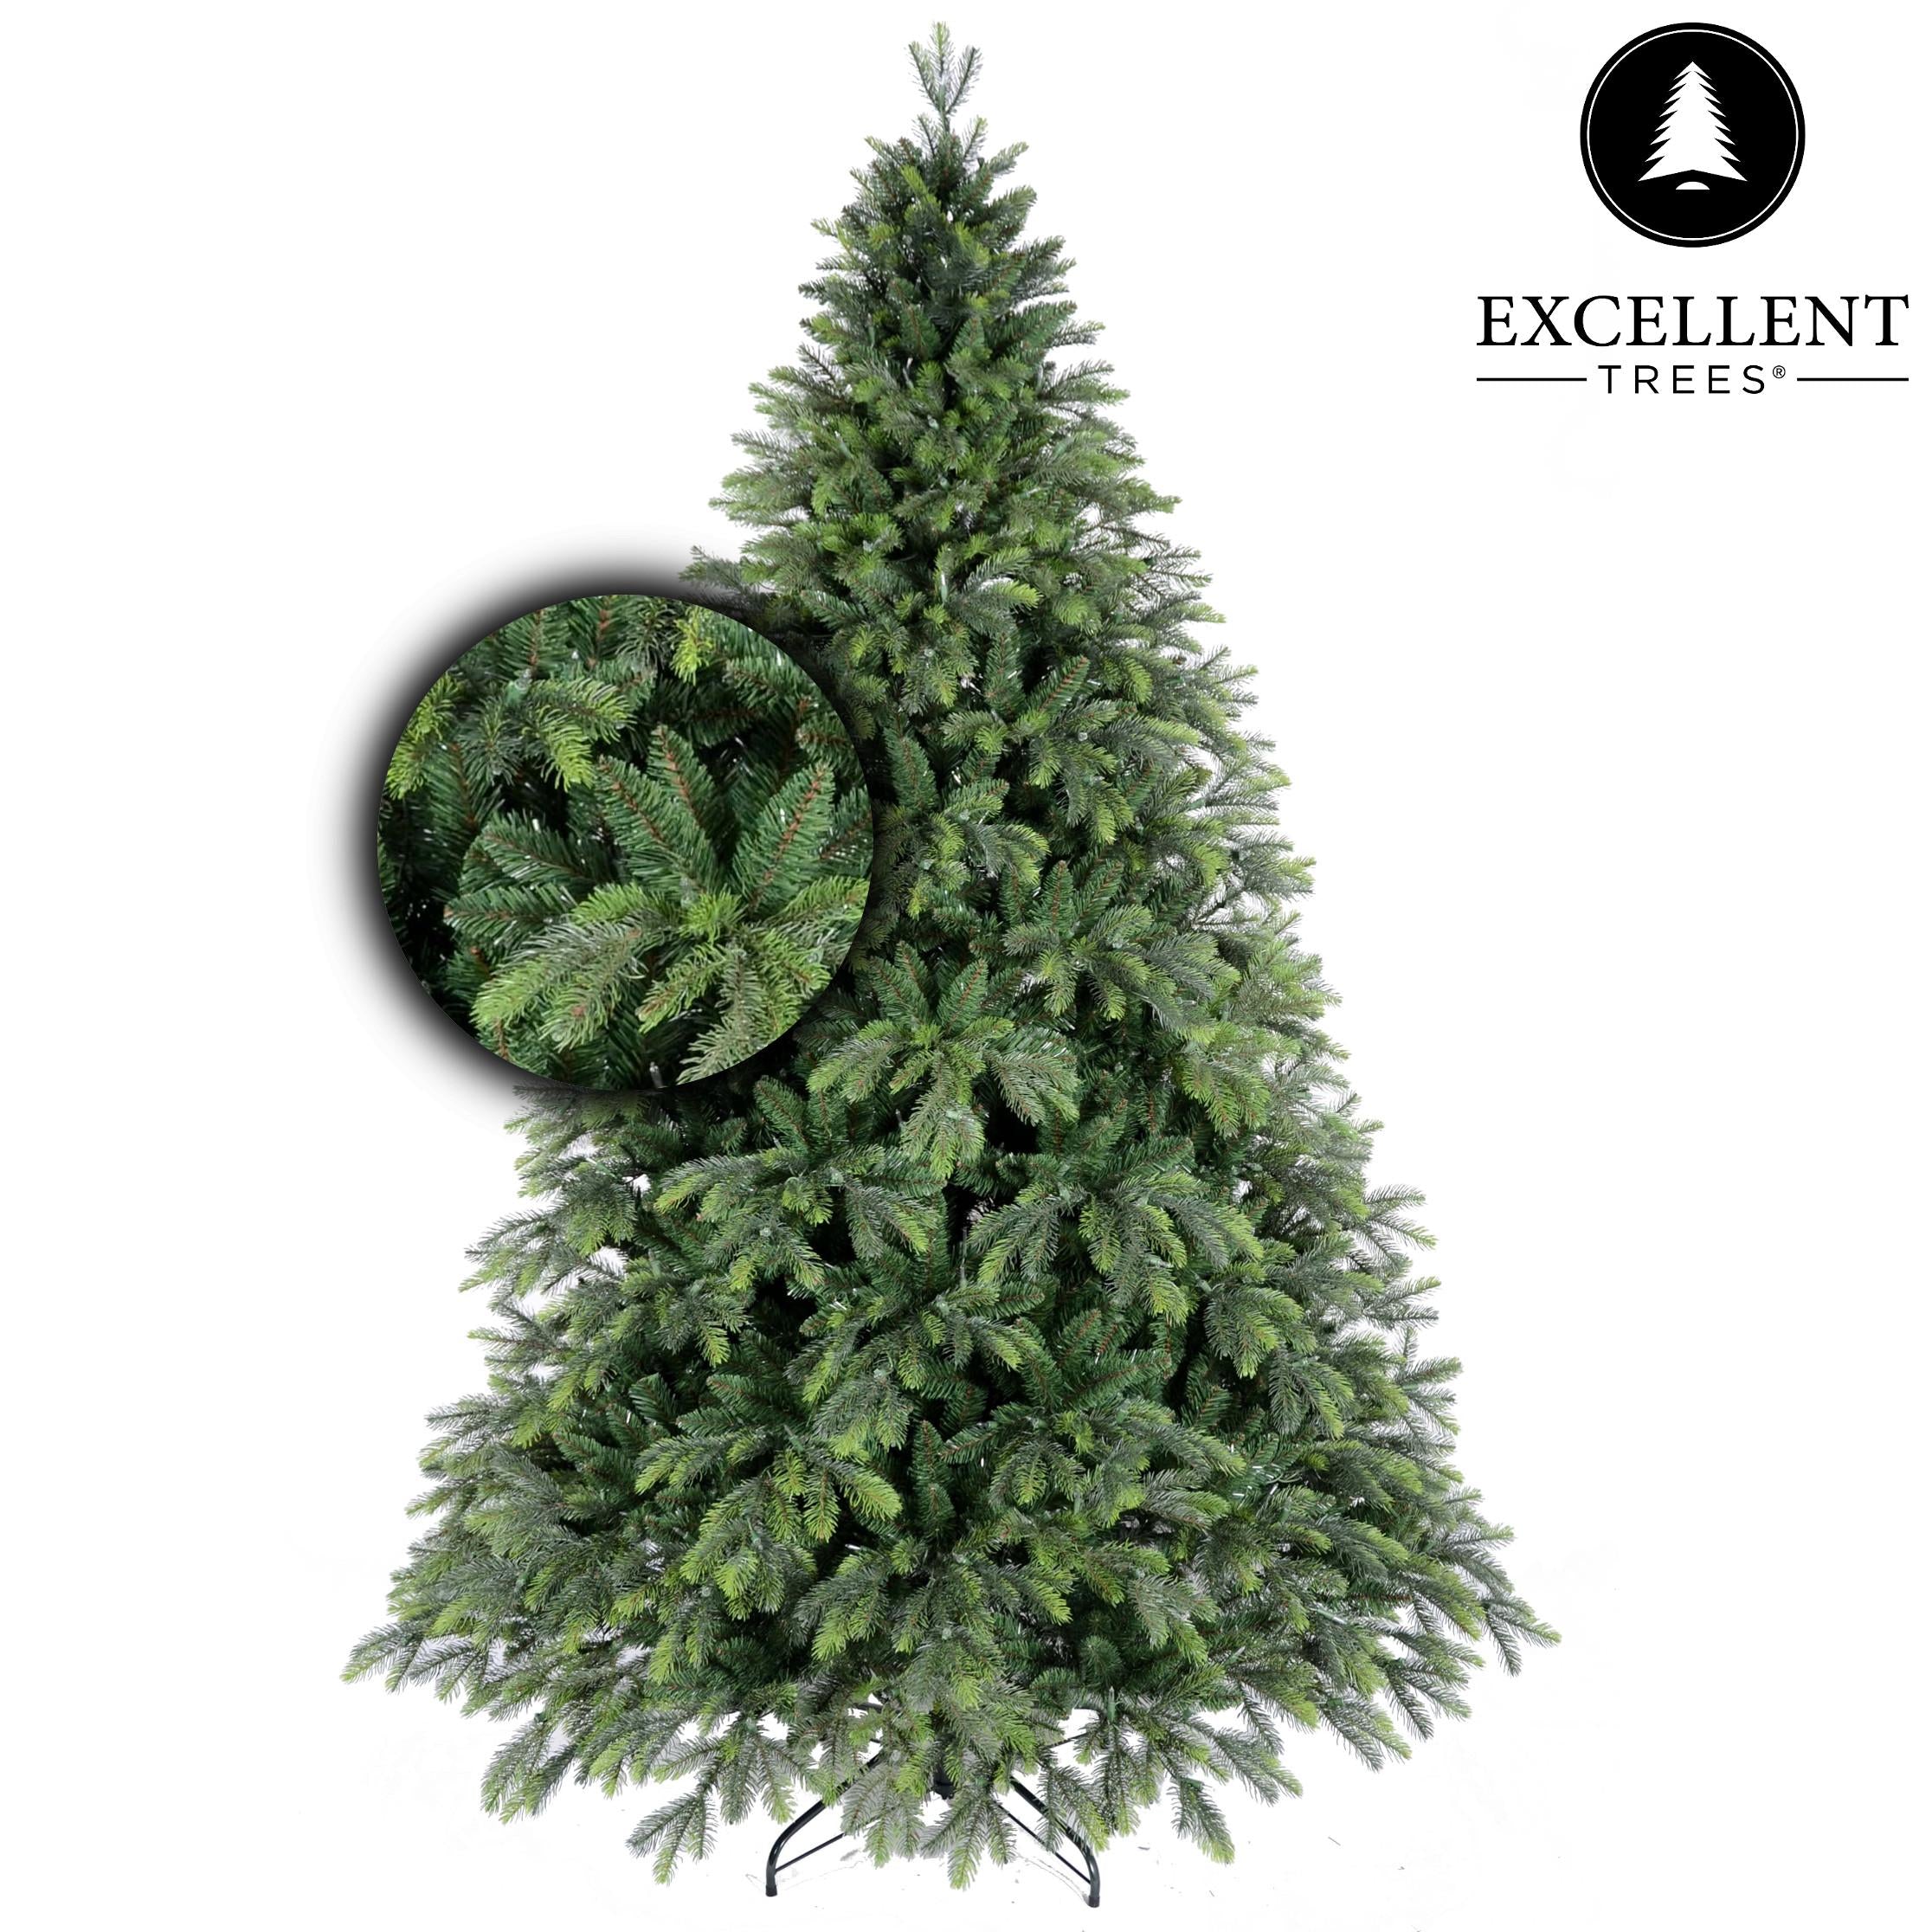 Premium Weihnachtsbaum Excellent Trees® Kalmar 180 cm - Luxusausführung